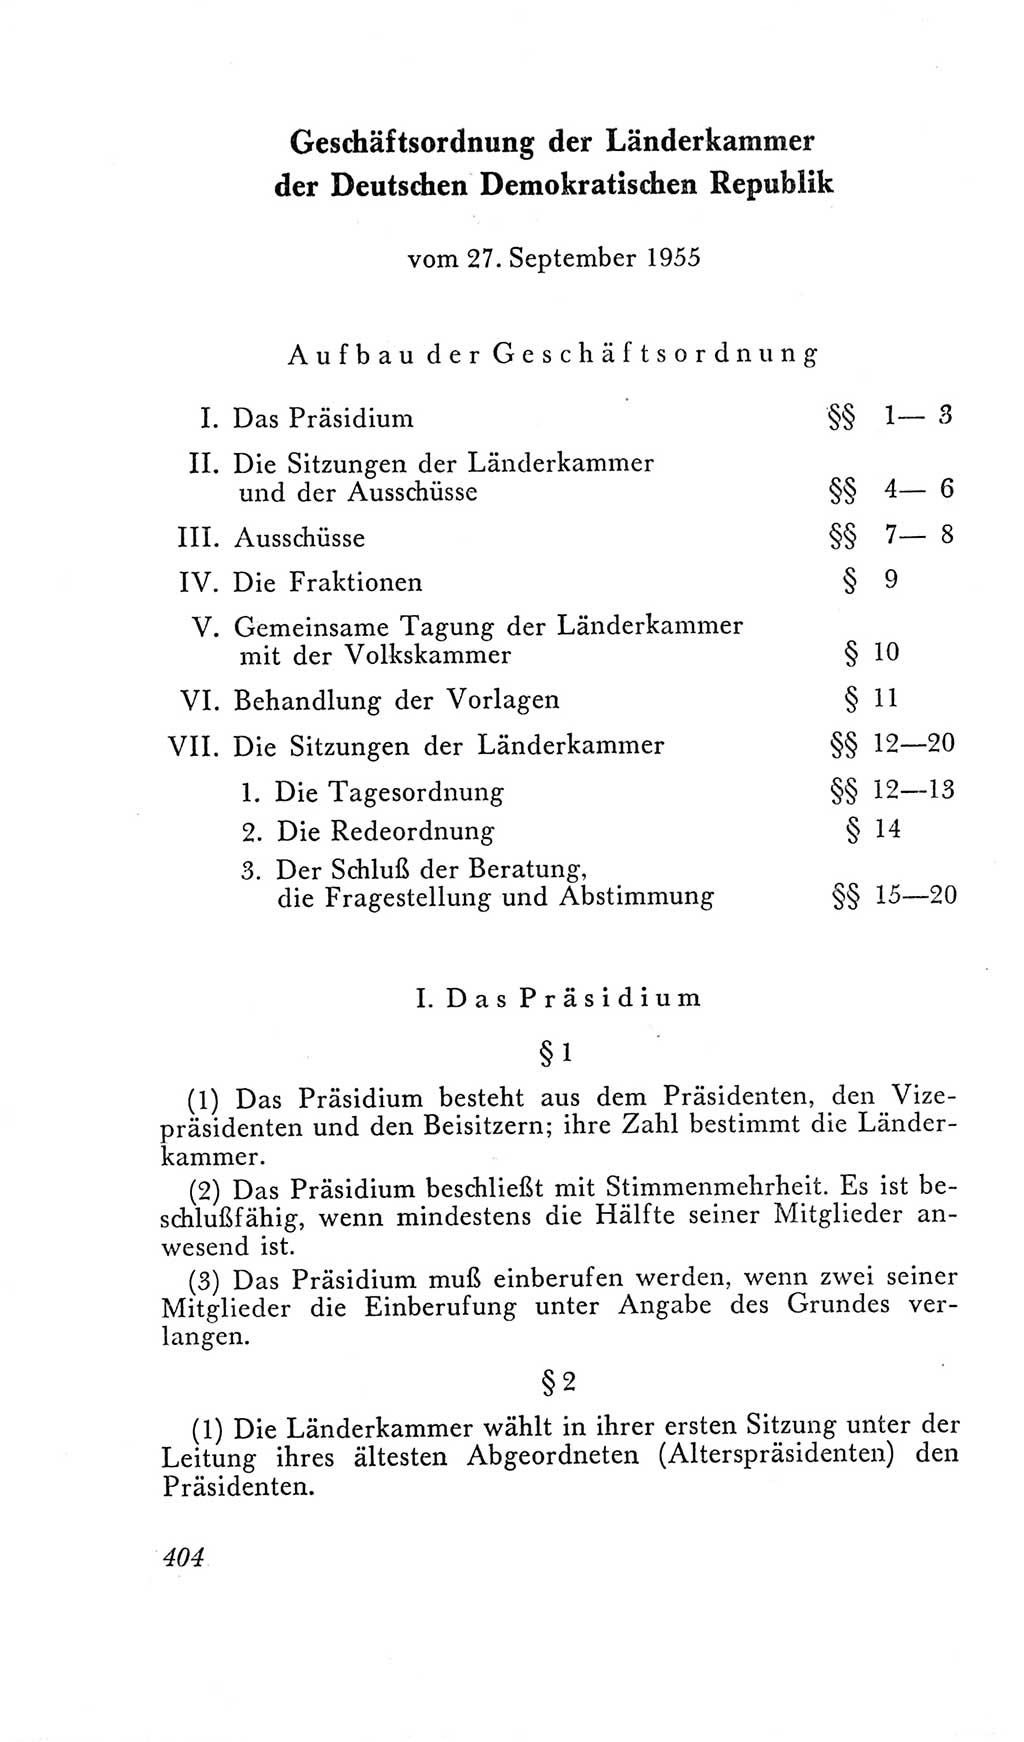 Handbuch der Volkskammer (VK) der Deutschen Demokratischen Republik (DDR), 2. Wahlperiode 1954-1958, Seite 404 (Hdb. VK. DDR, 2. WP. 1954-1958, S. 404)